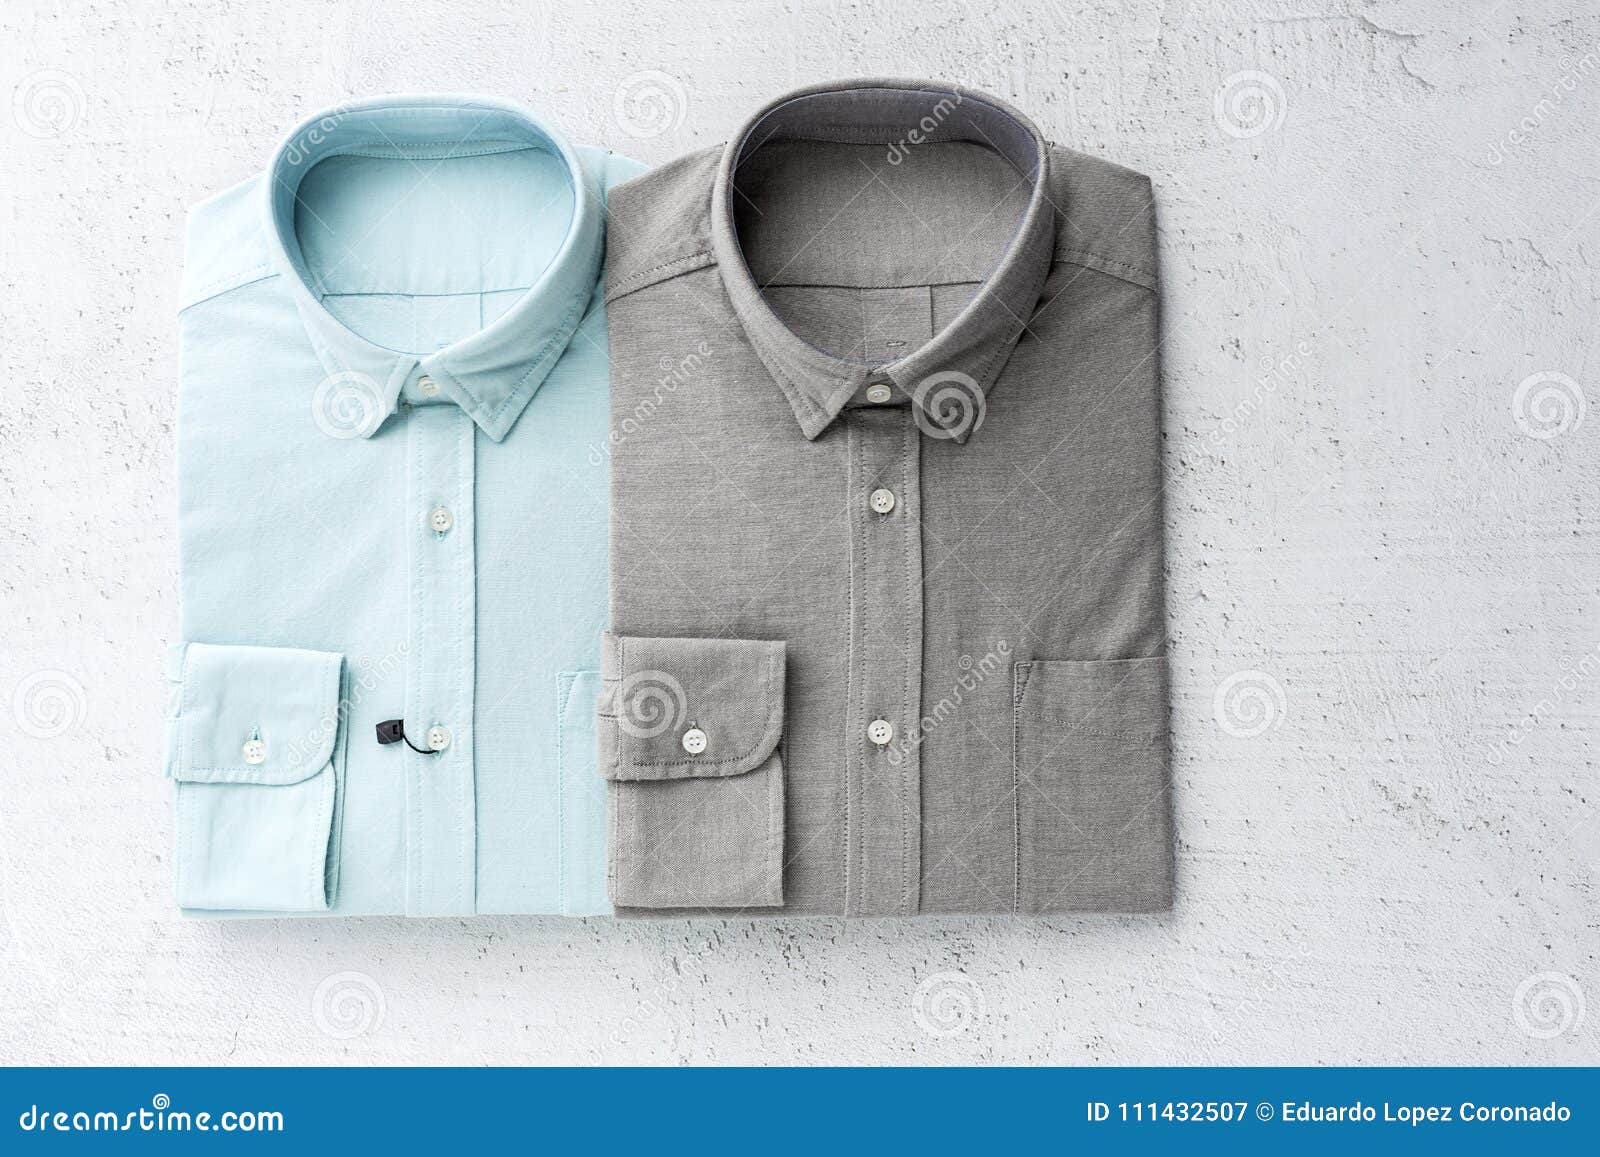 Men`s fashion shirts stock image. Image of background - 111432507